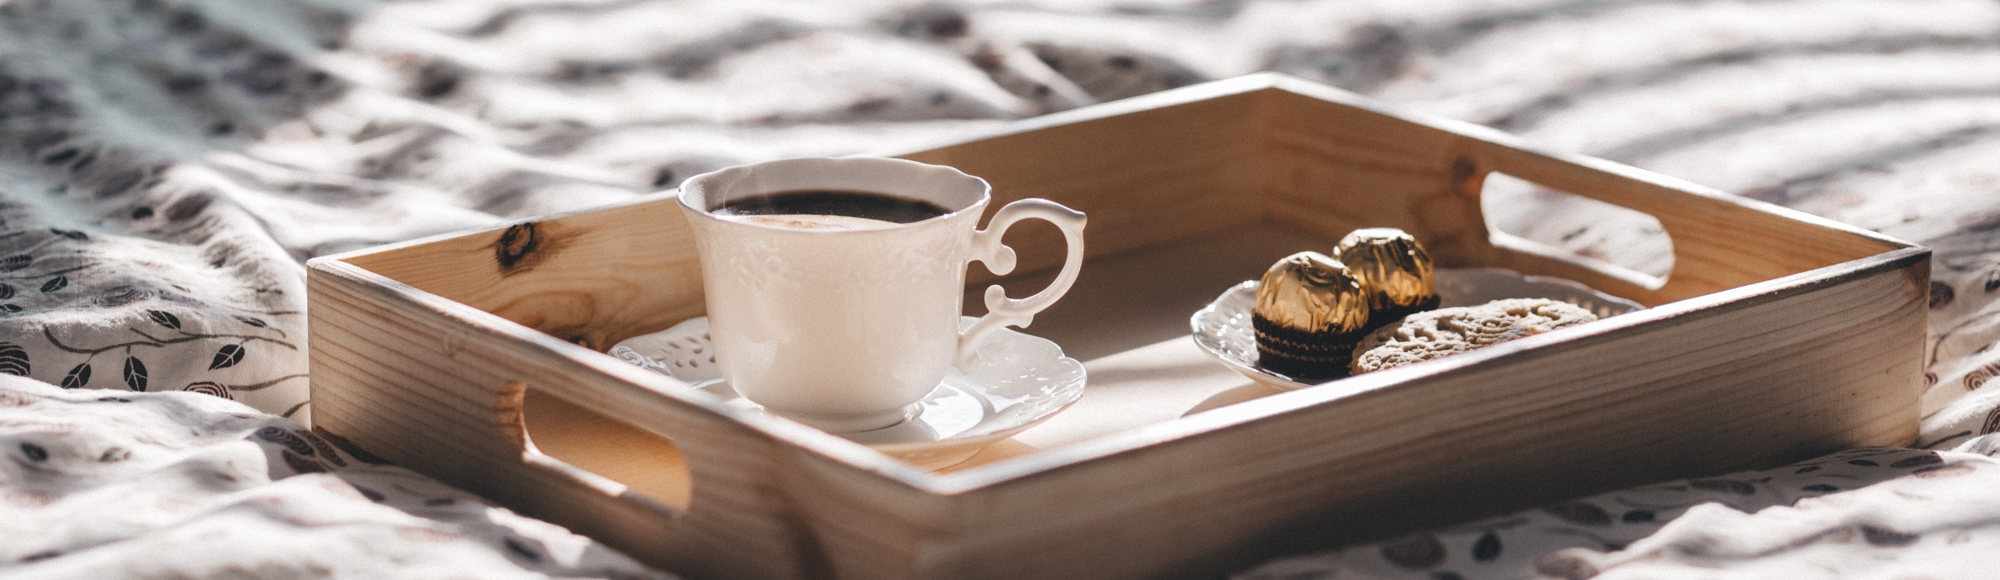 houten dienblad met koffie en bonbons op een hotelbed. 